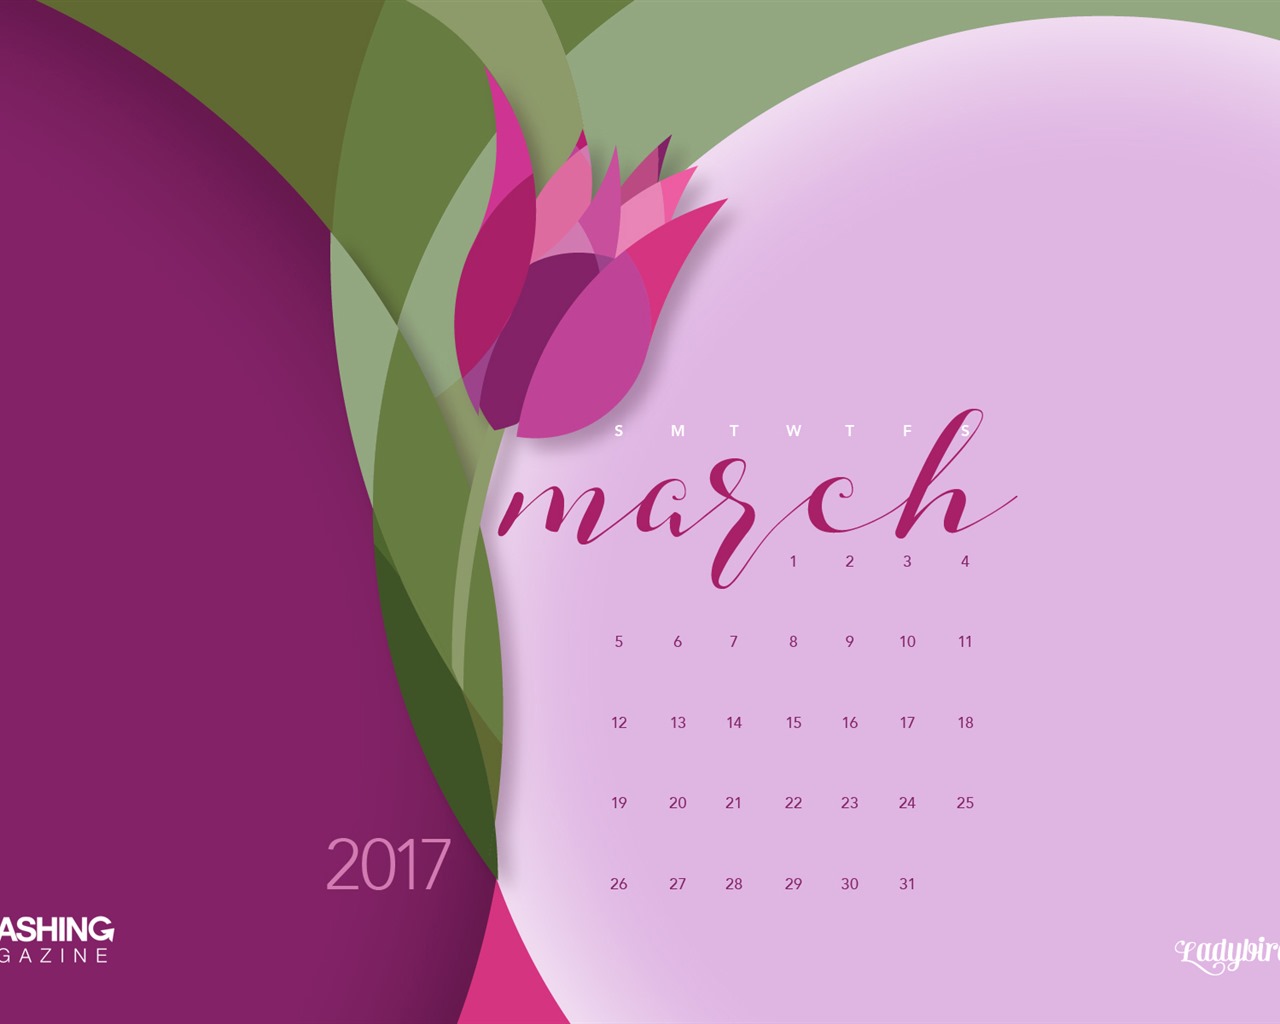 March 2017 calendar wallpaper (2) #7 - 1280x1024